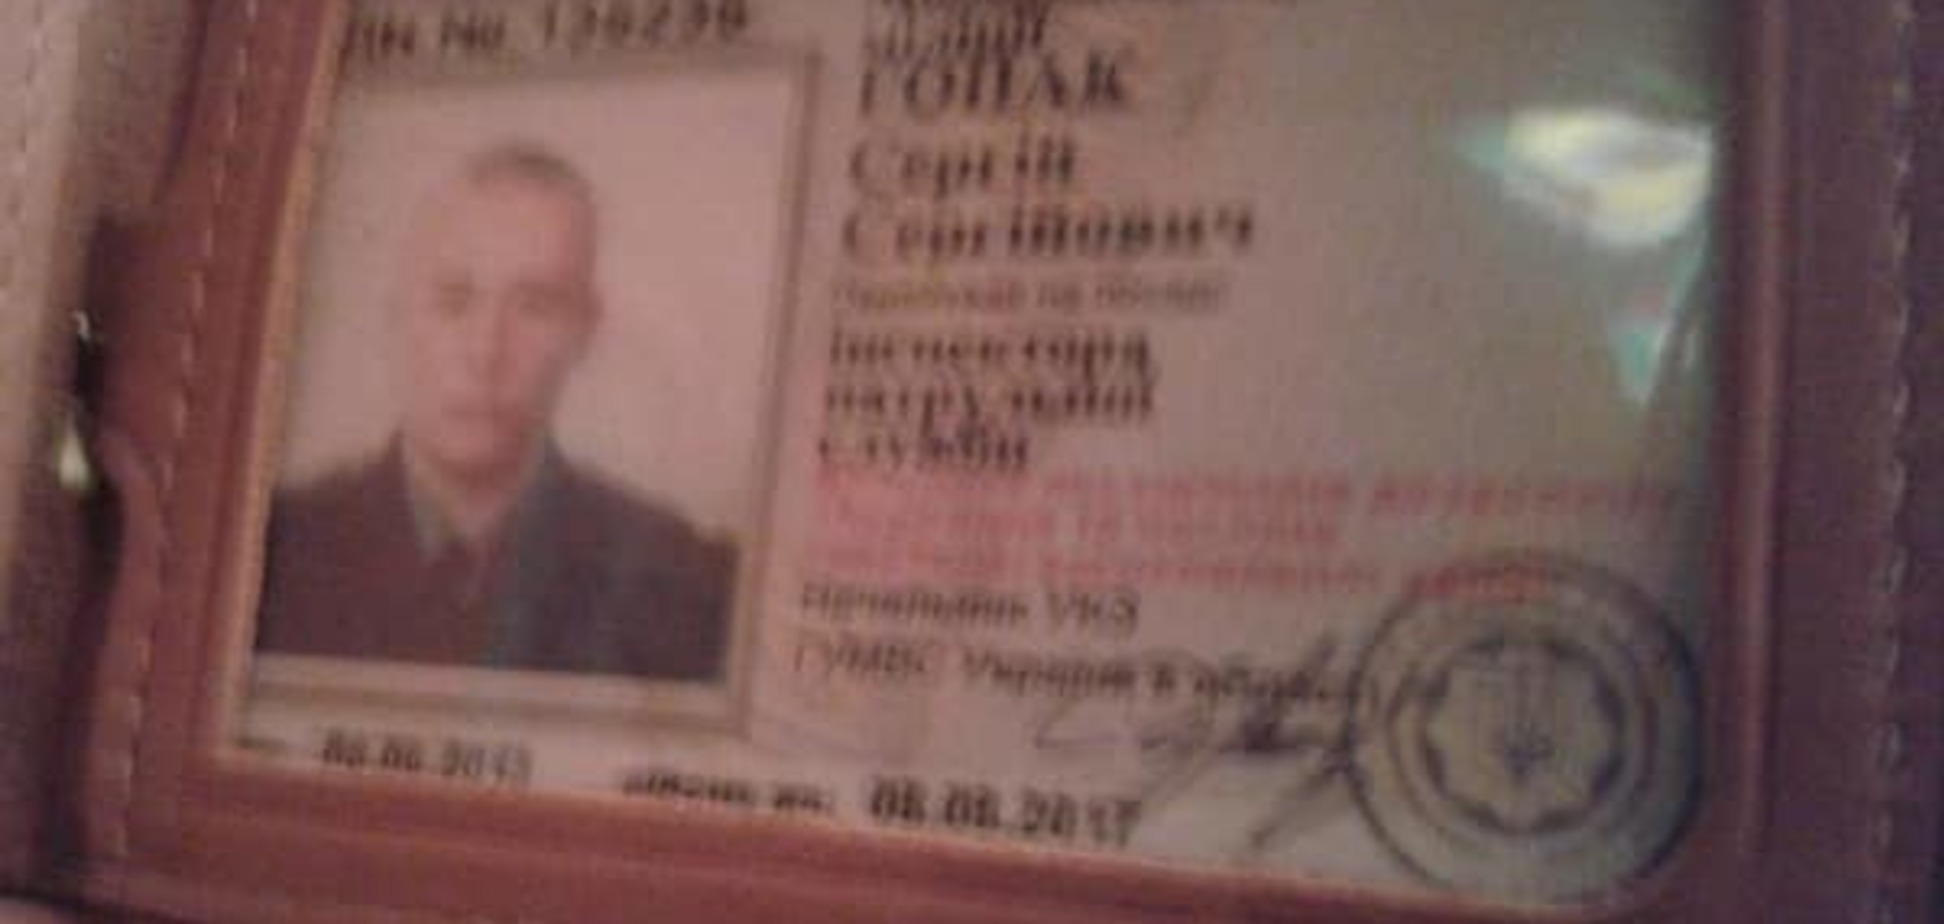 У Дніпропетровську міліціонер з 'дружками' побили двох чоловіків: розповідь потерпілого